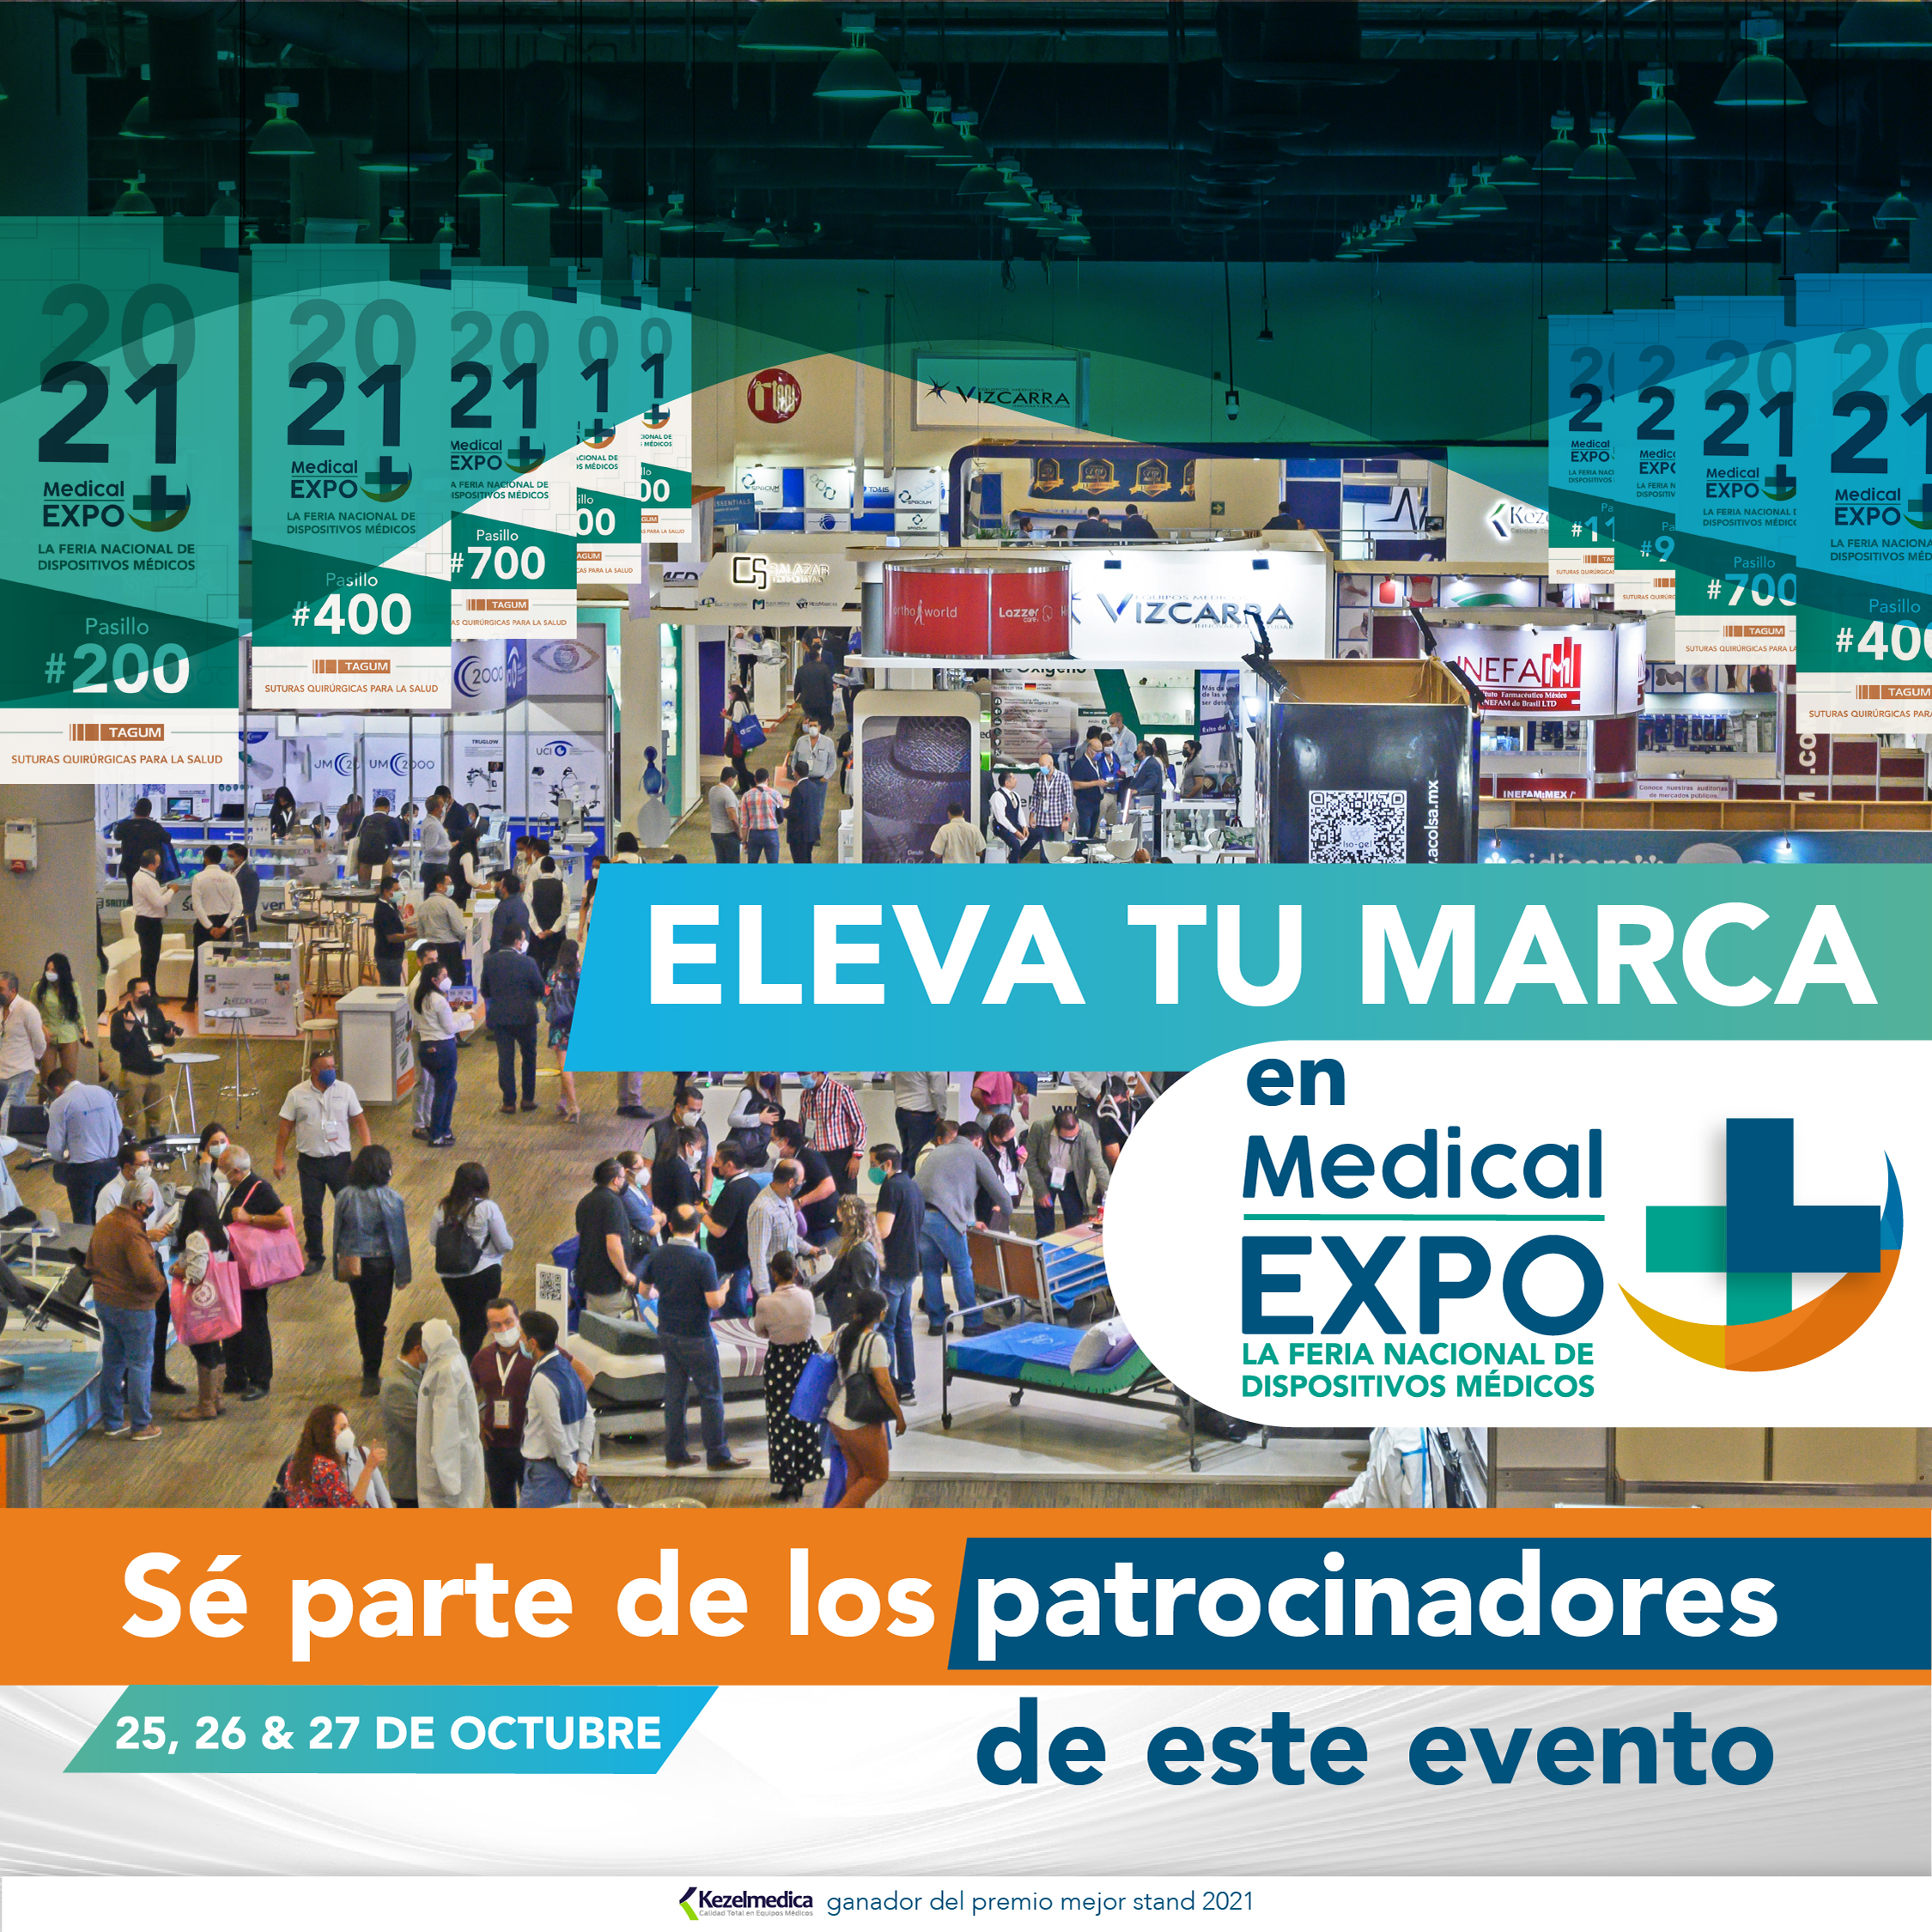 Medical Expo showcase image 1